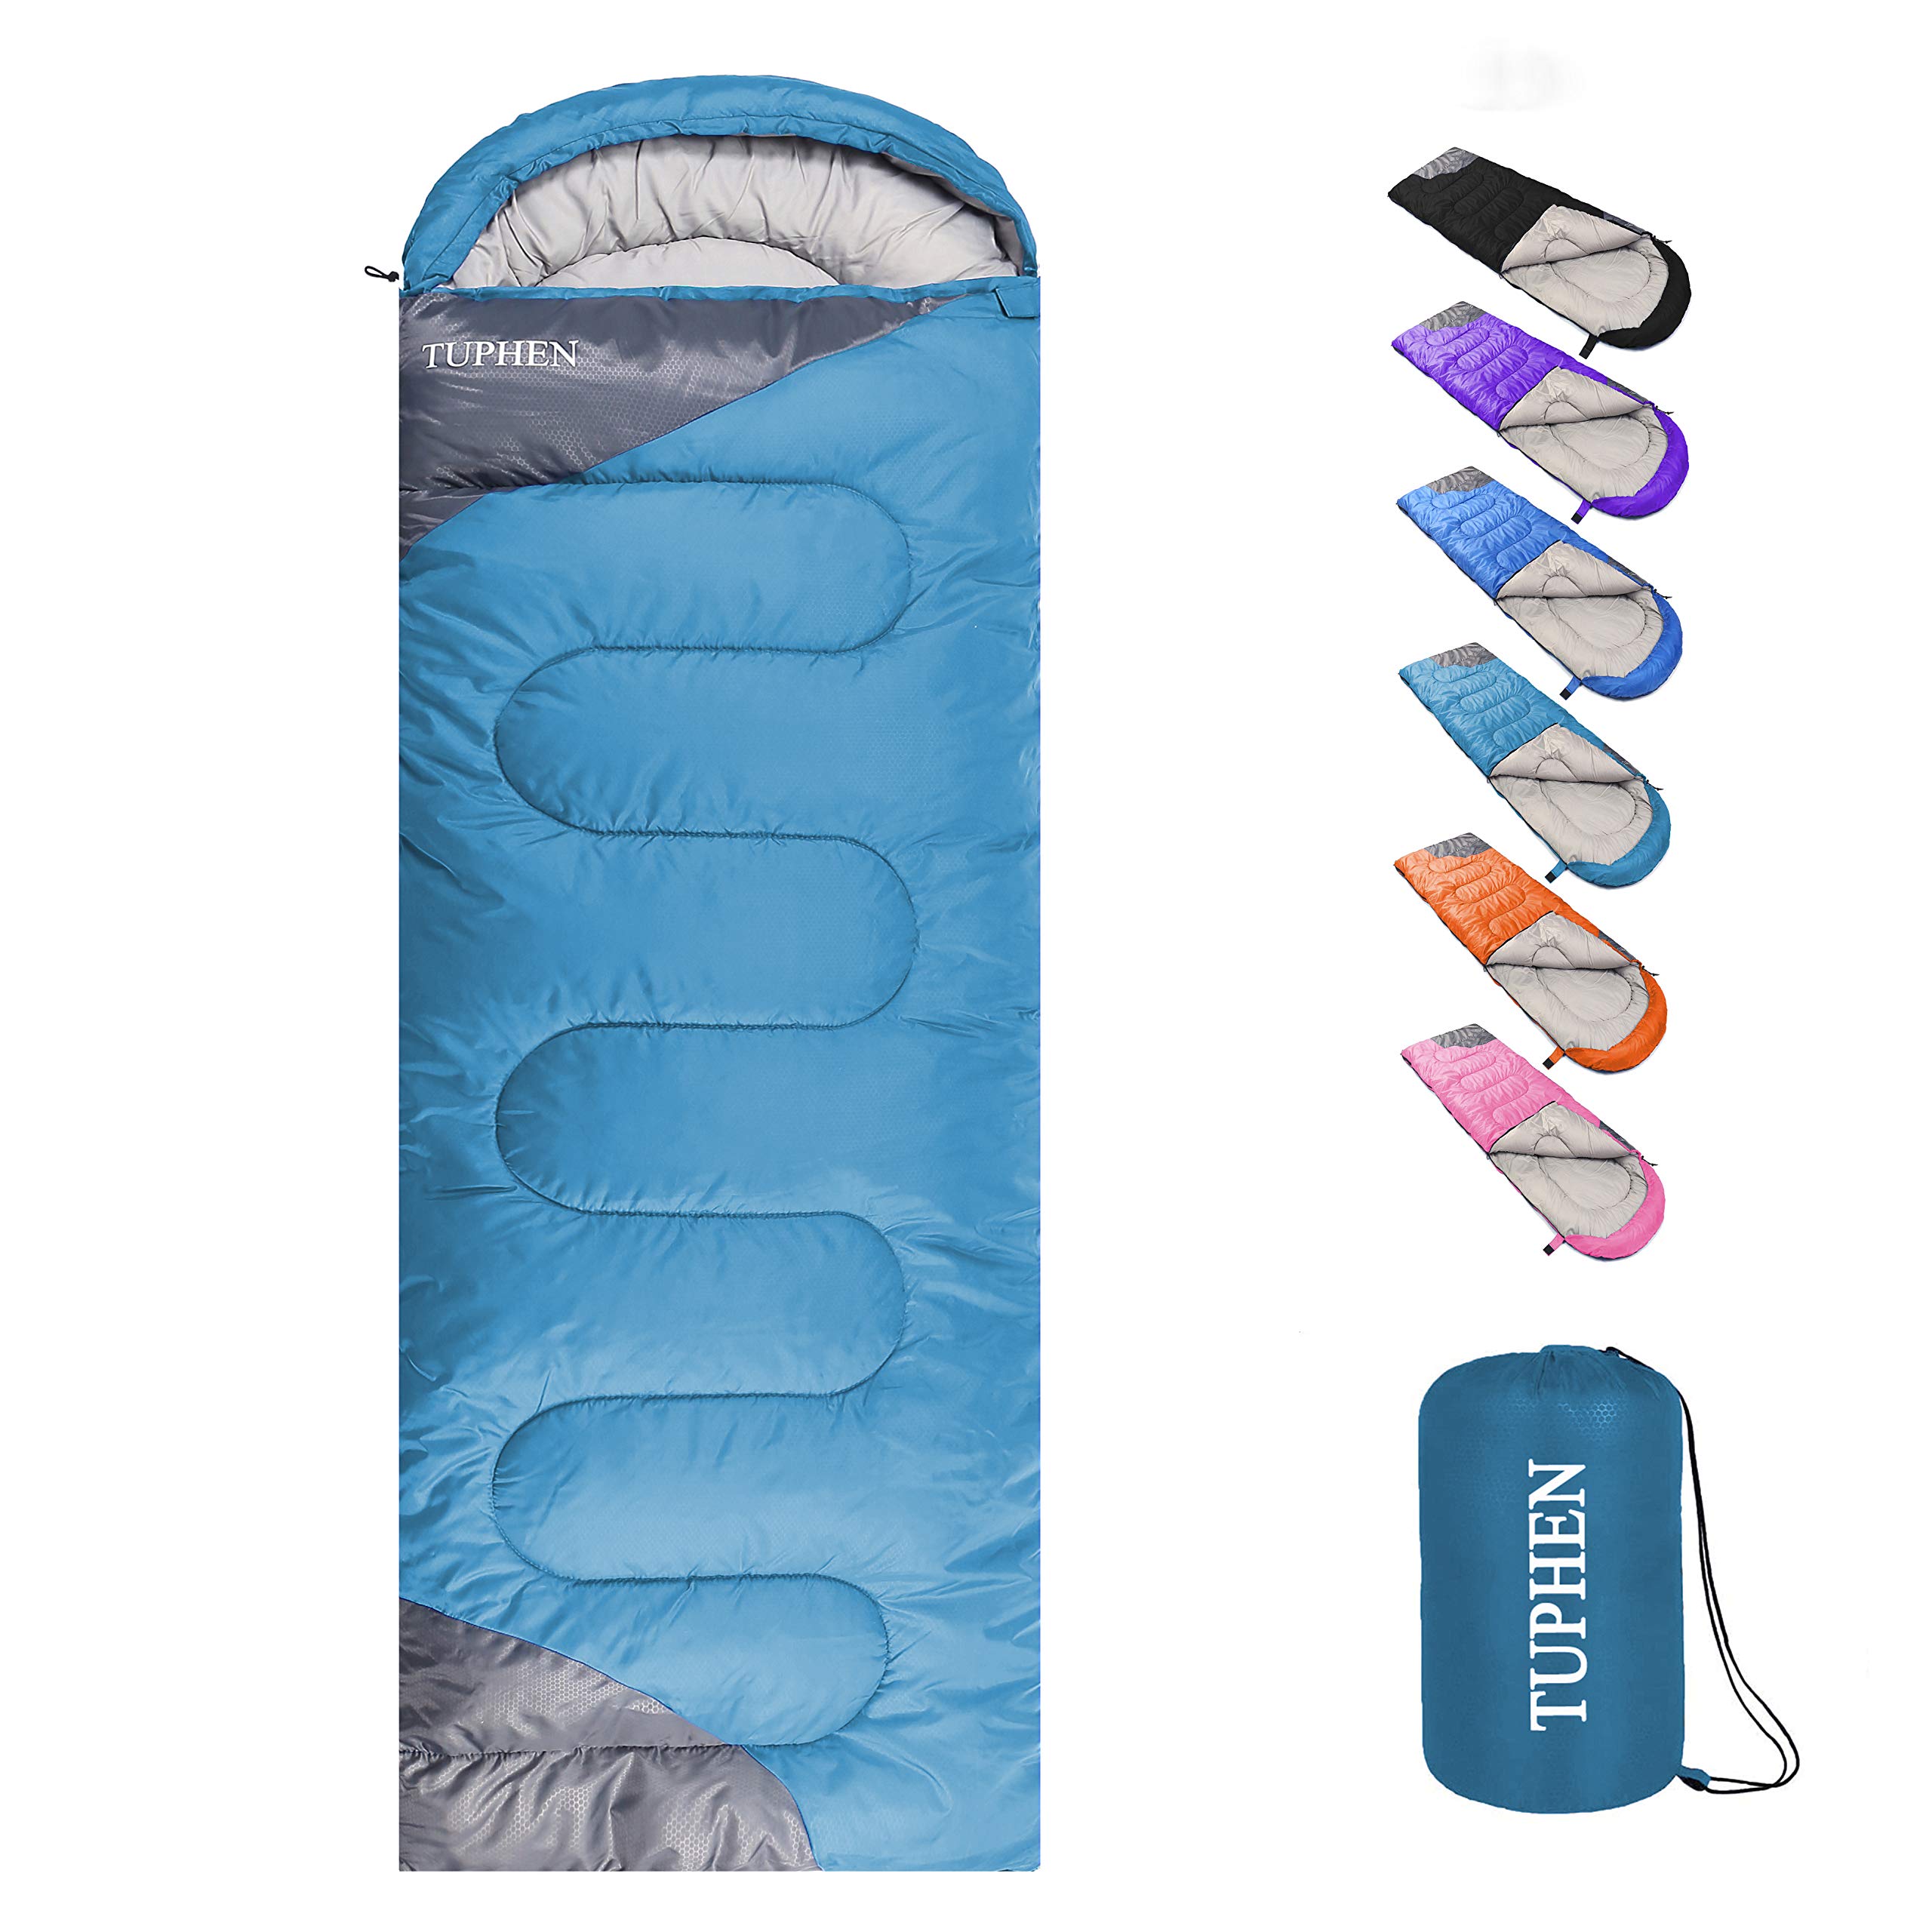 Camping Sleeping Bag Ultralight 4 Season Warm Envelope Outdoor Traveling  Hiking | eBay